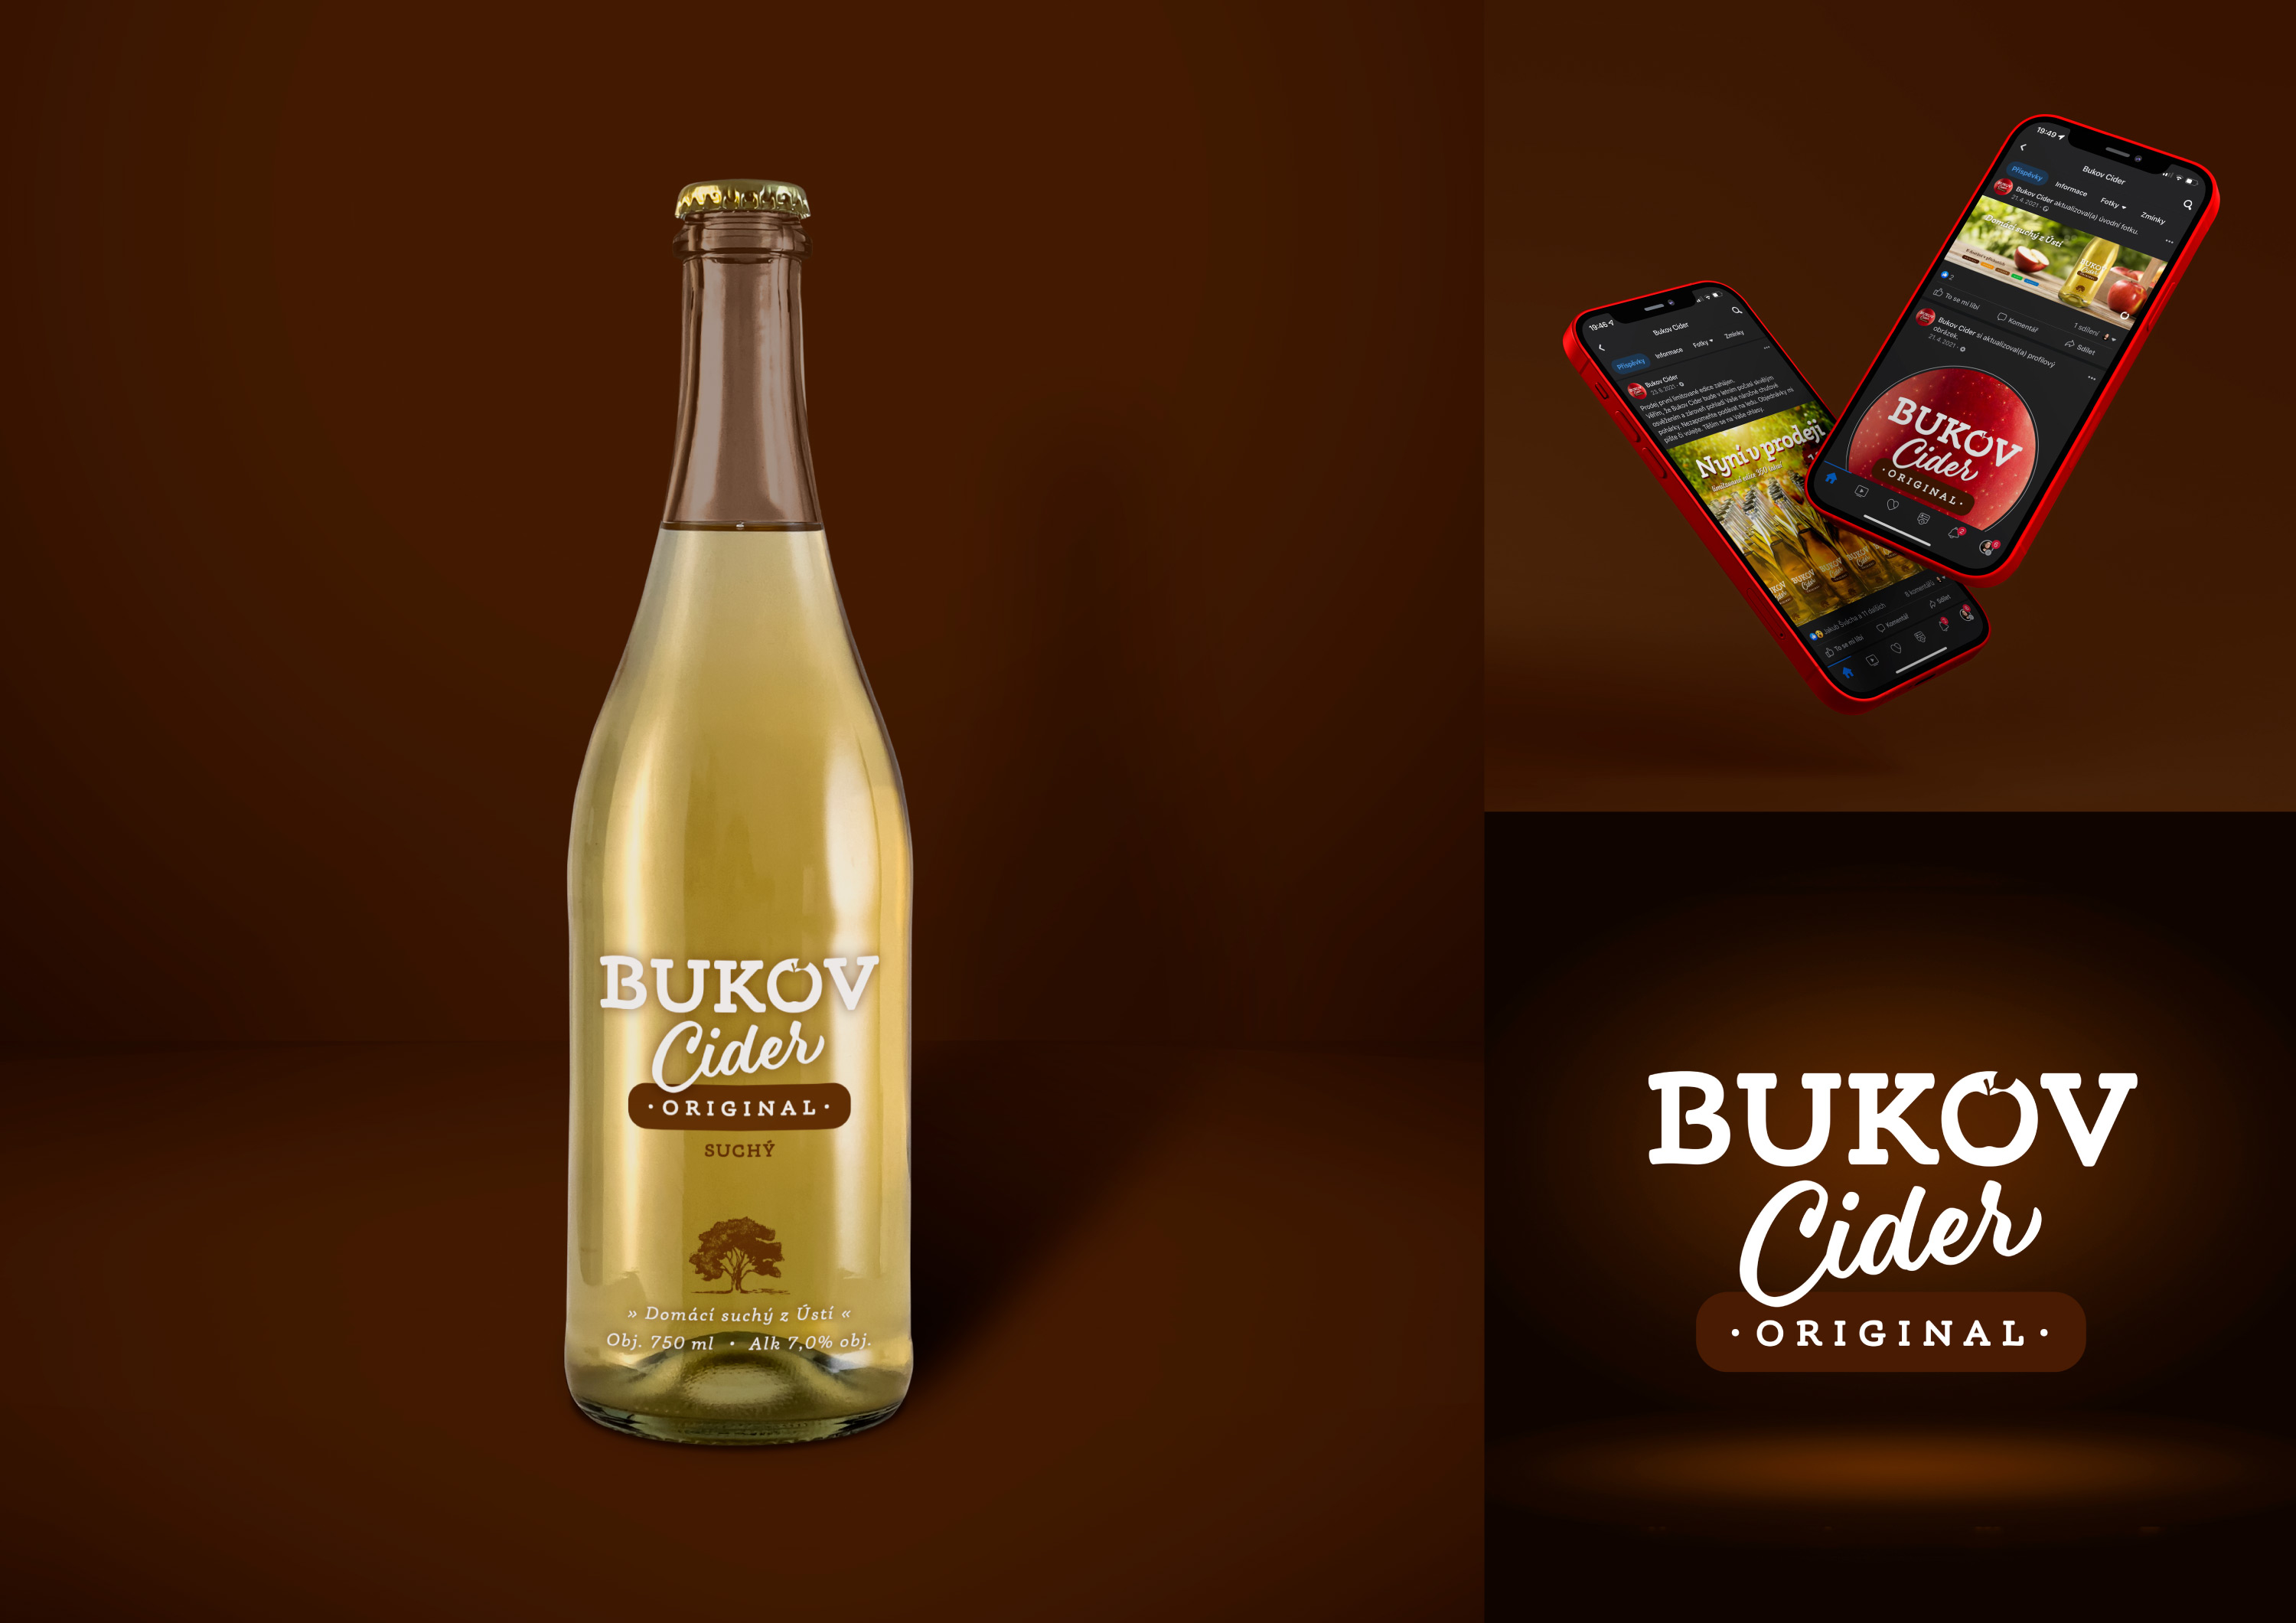 Bukov Cider Originál - etiketa cideru a vizuál na sociální sítě